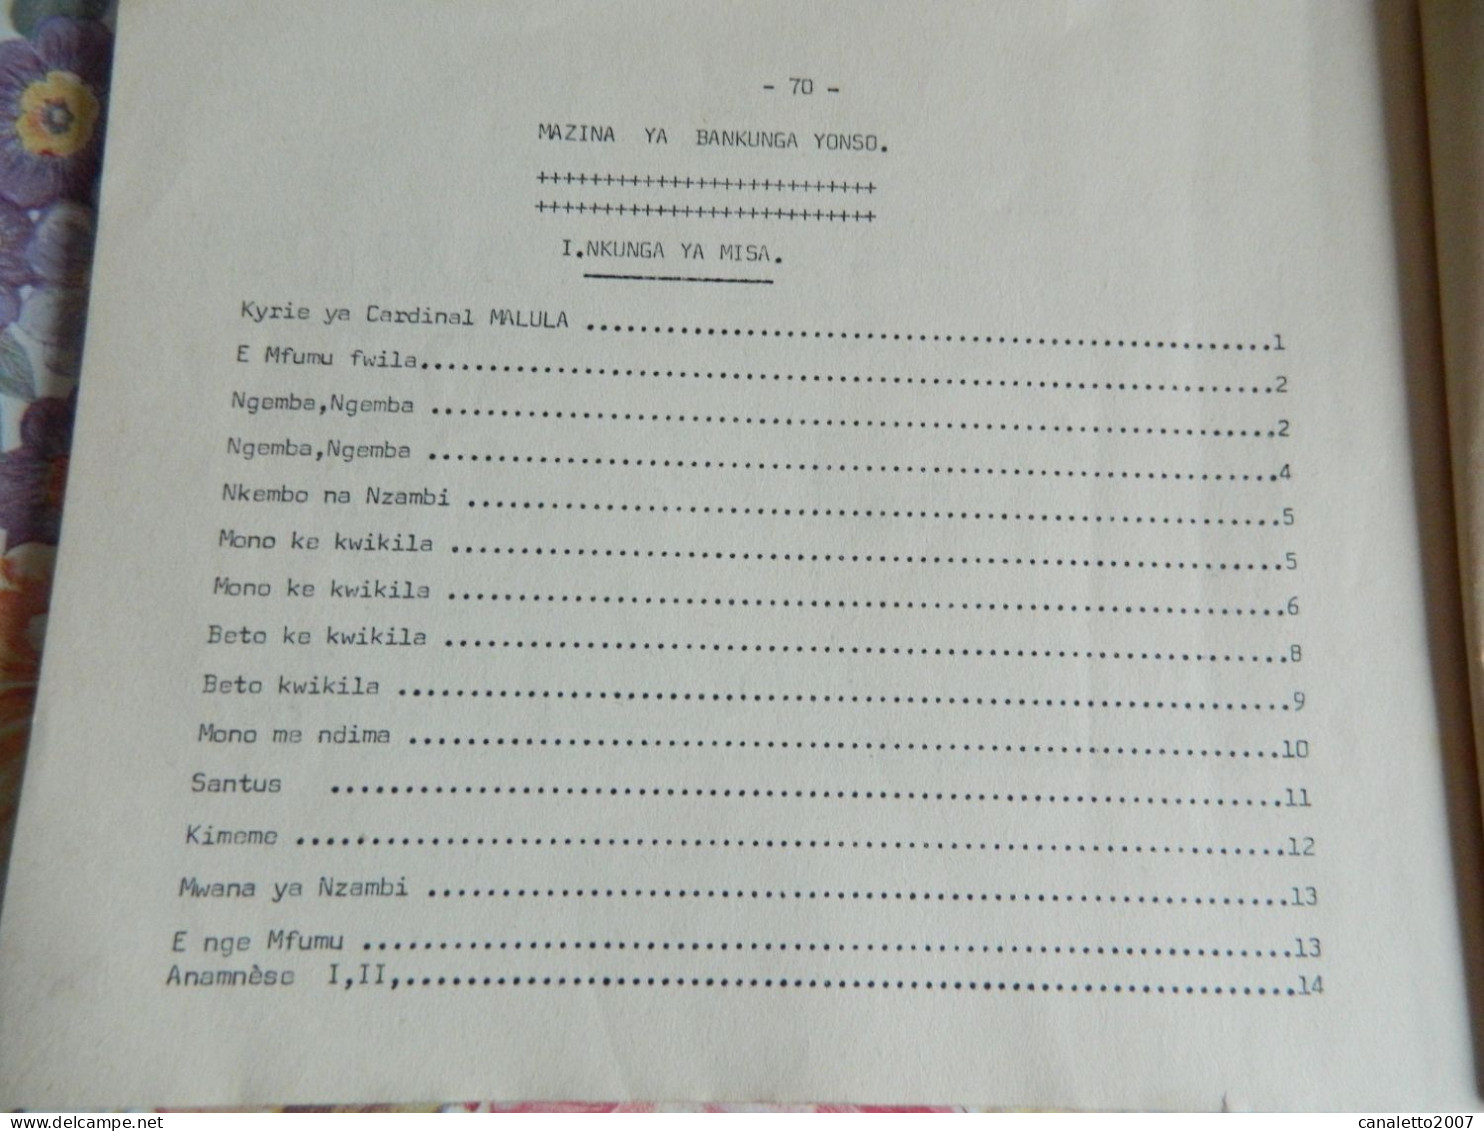 KIKWIT +CONGO: LIVRET DE CHANSONS POUR LA MESS DE 1969 -BETO YIMBA 76 PAGES EN LANGUE DU CONGO -SWAILI ?? - Culture